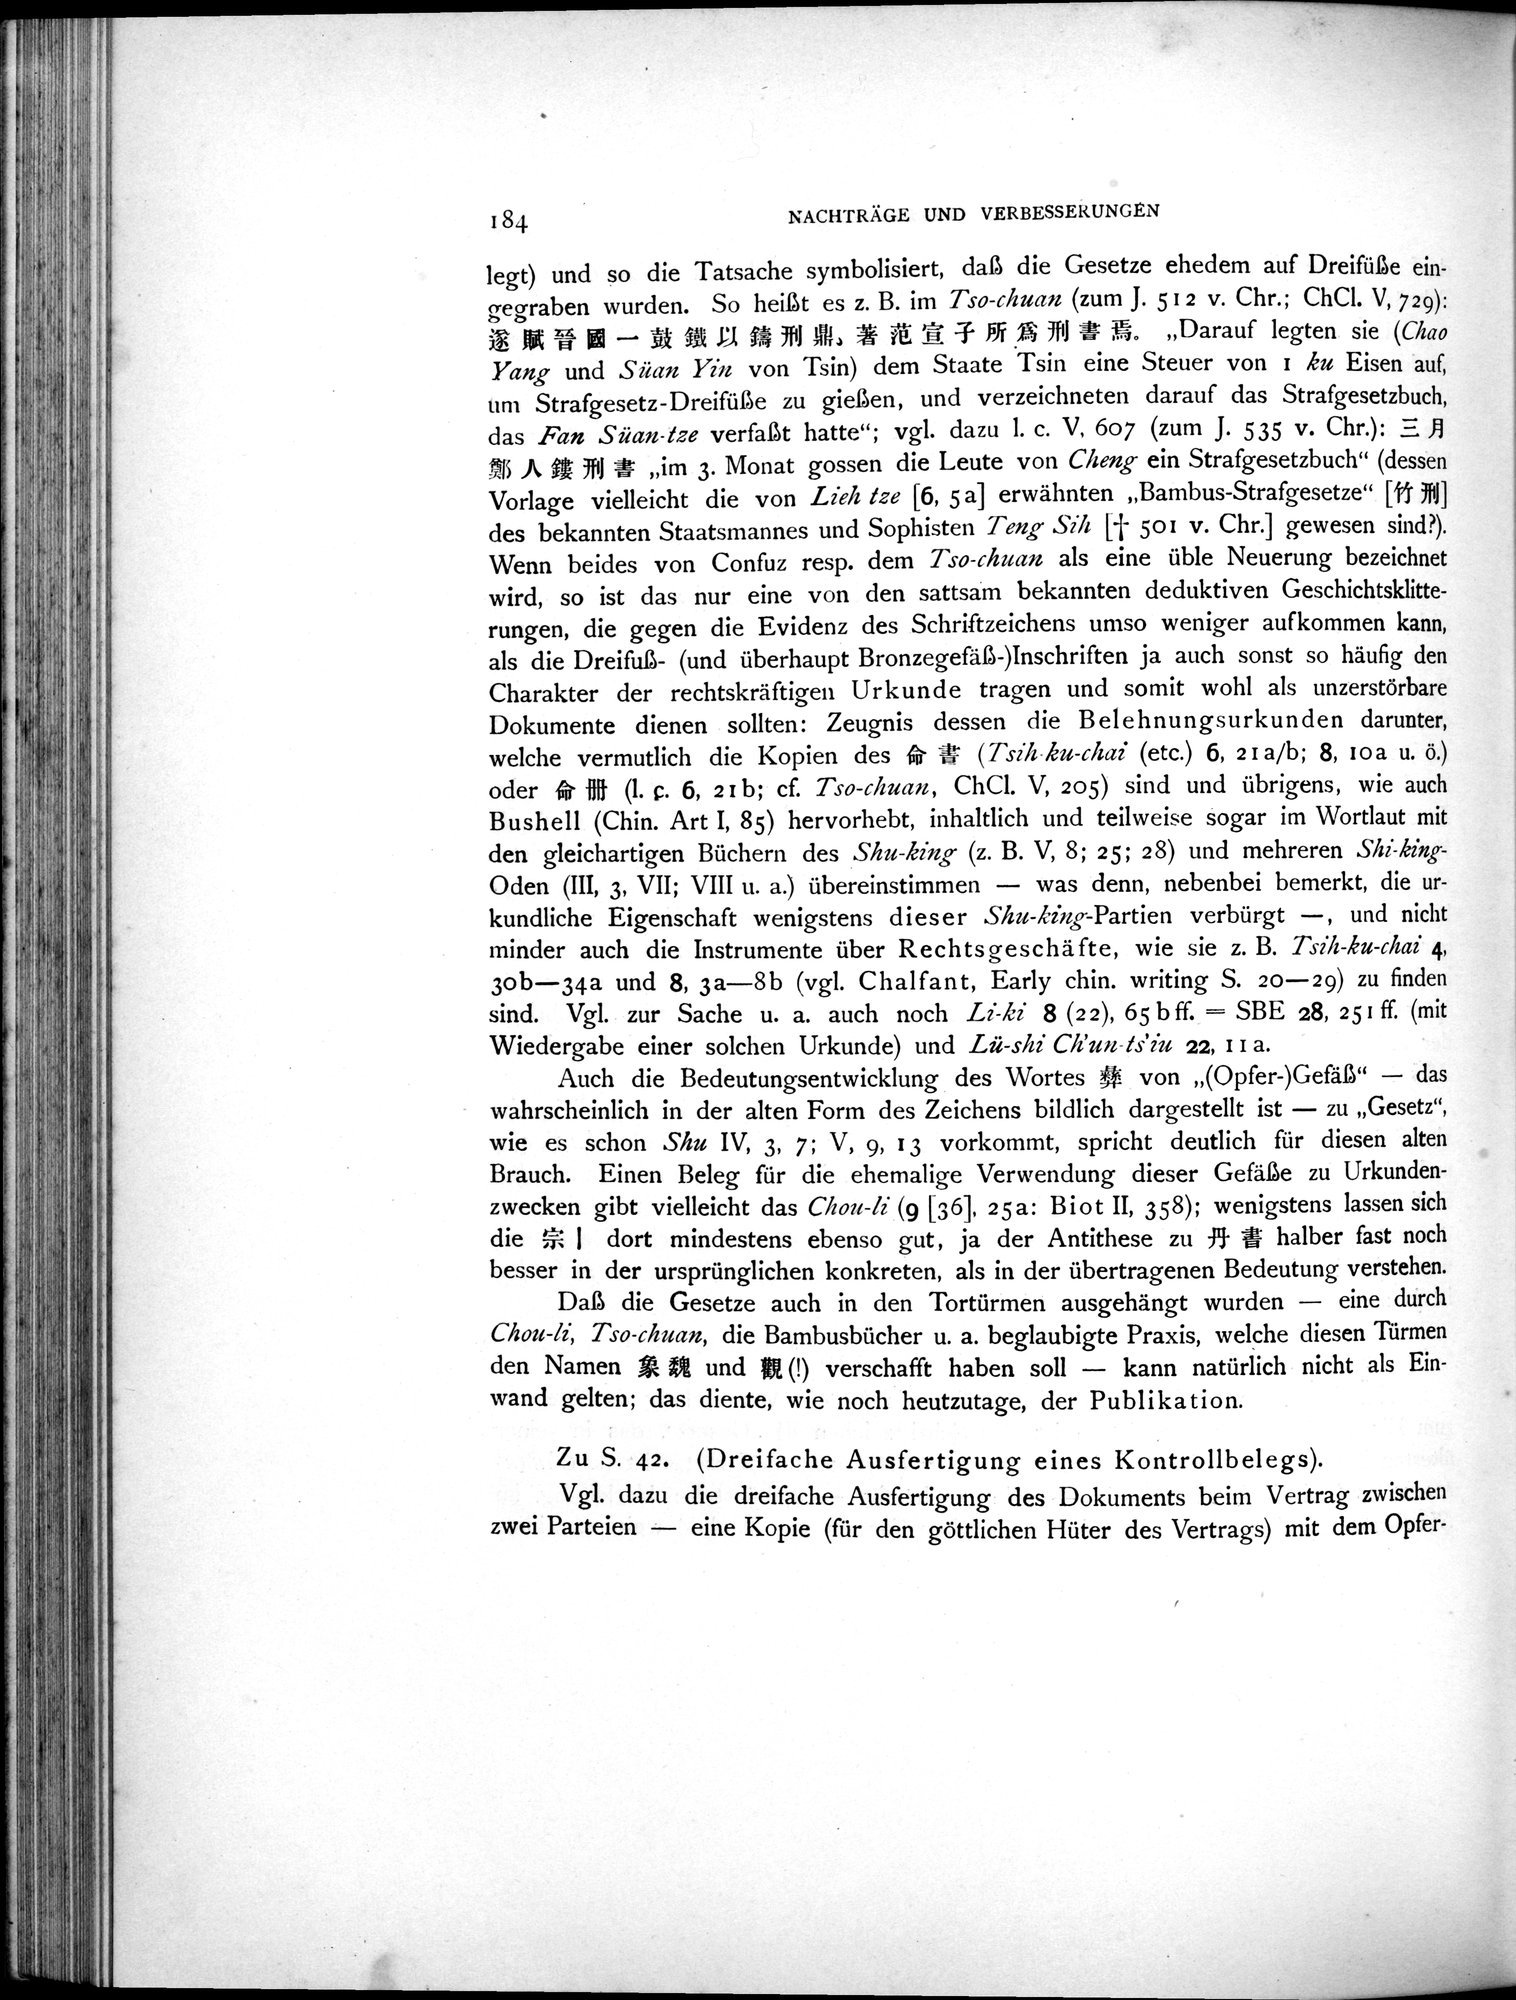 Die Chinesischen Handschriften- und sonstigen Kleinfunde Sven Hedins in Lou-lan : vol.1 / Page 208 (Grayscale High Resolution Image)